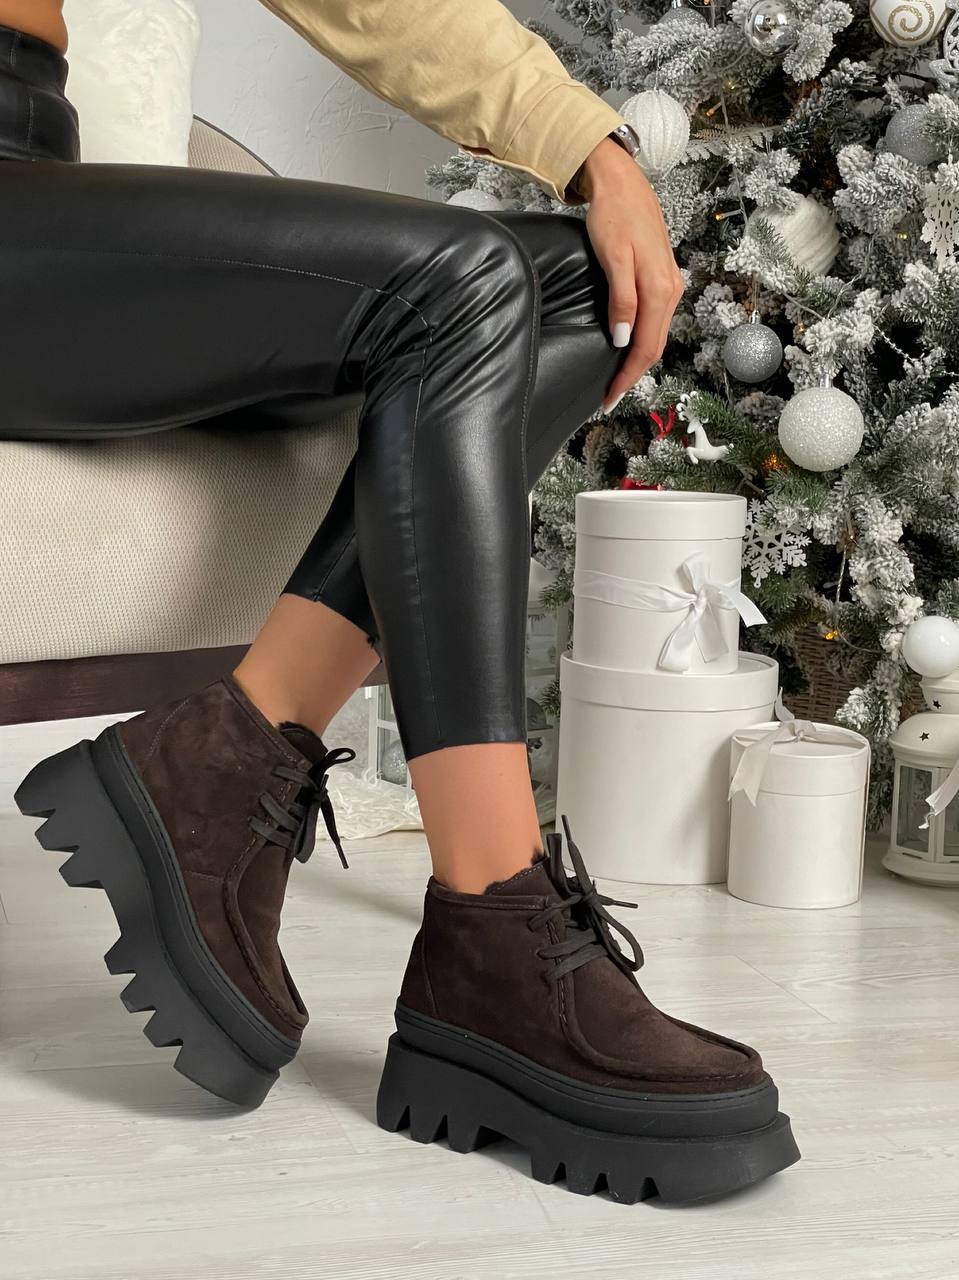 Какую зимнюю обувь выбирают женщины. Исследование предпочтений